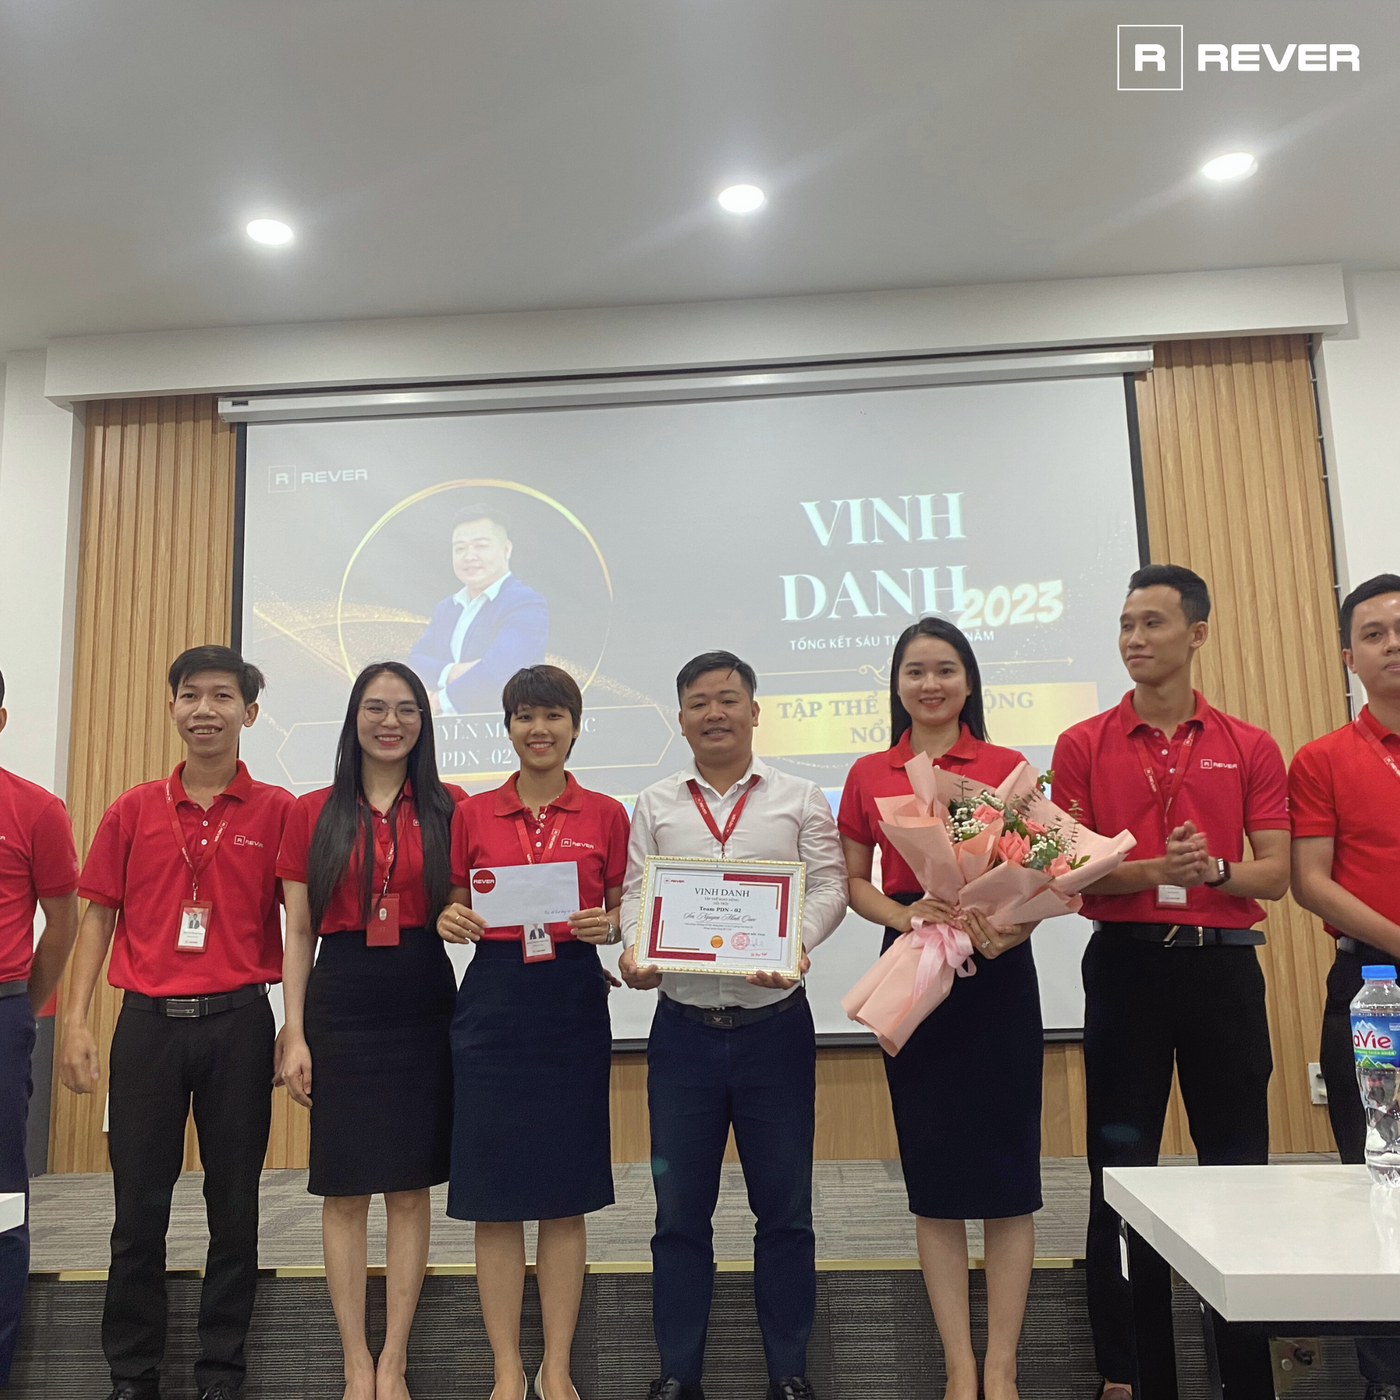 Nhiều cá nhân được khen thưởng và vinh danh trong sự kiện Tổng kết Kinh doanh Rever Đà Nẵng